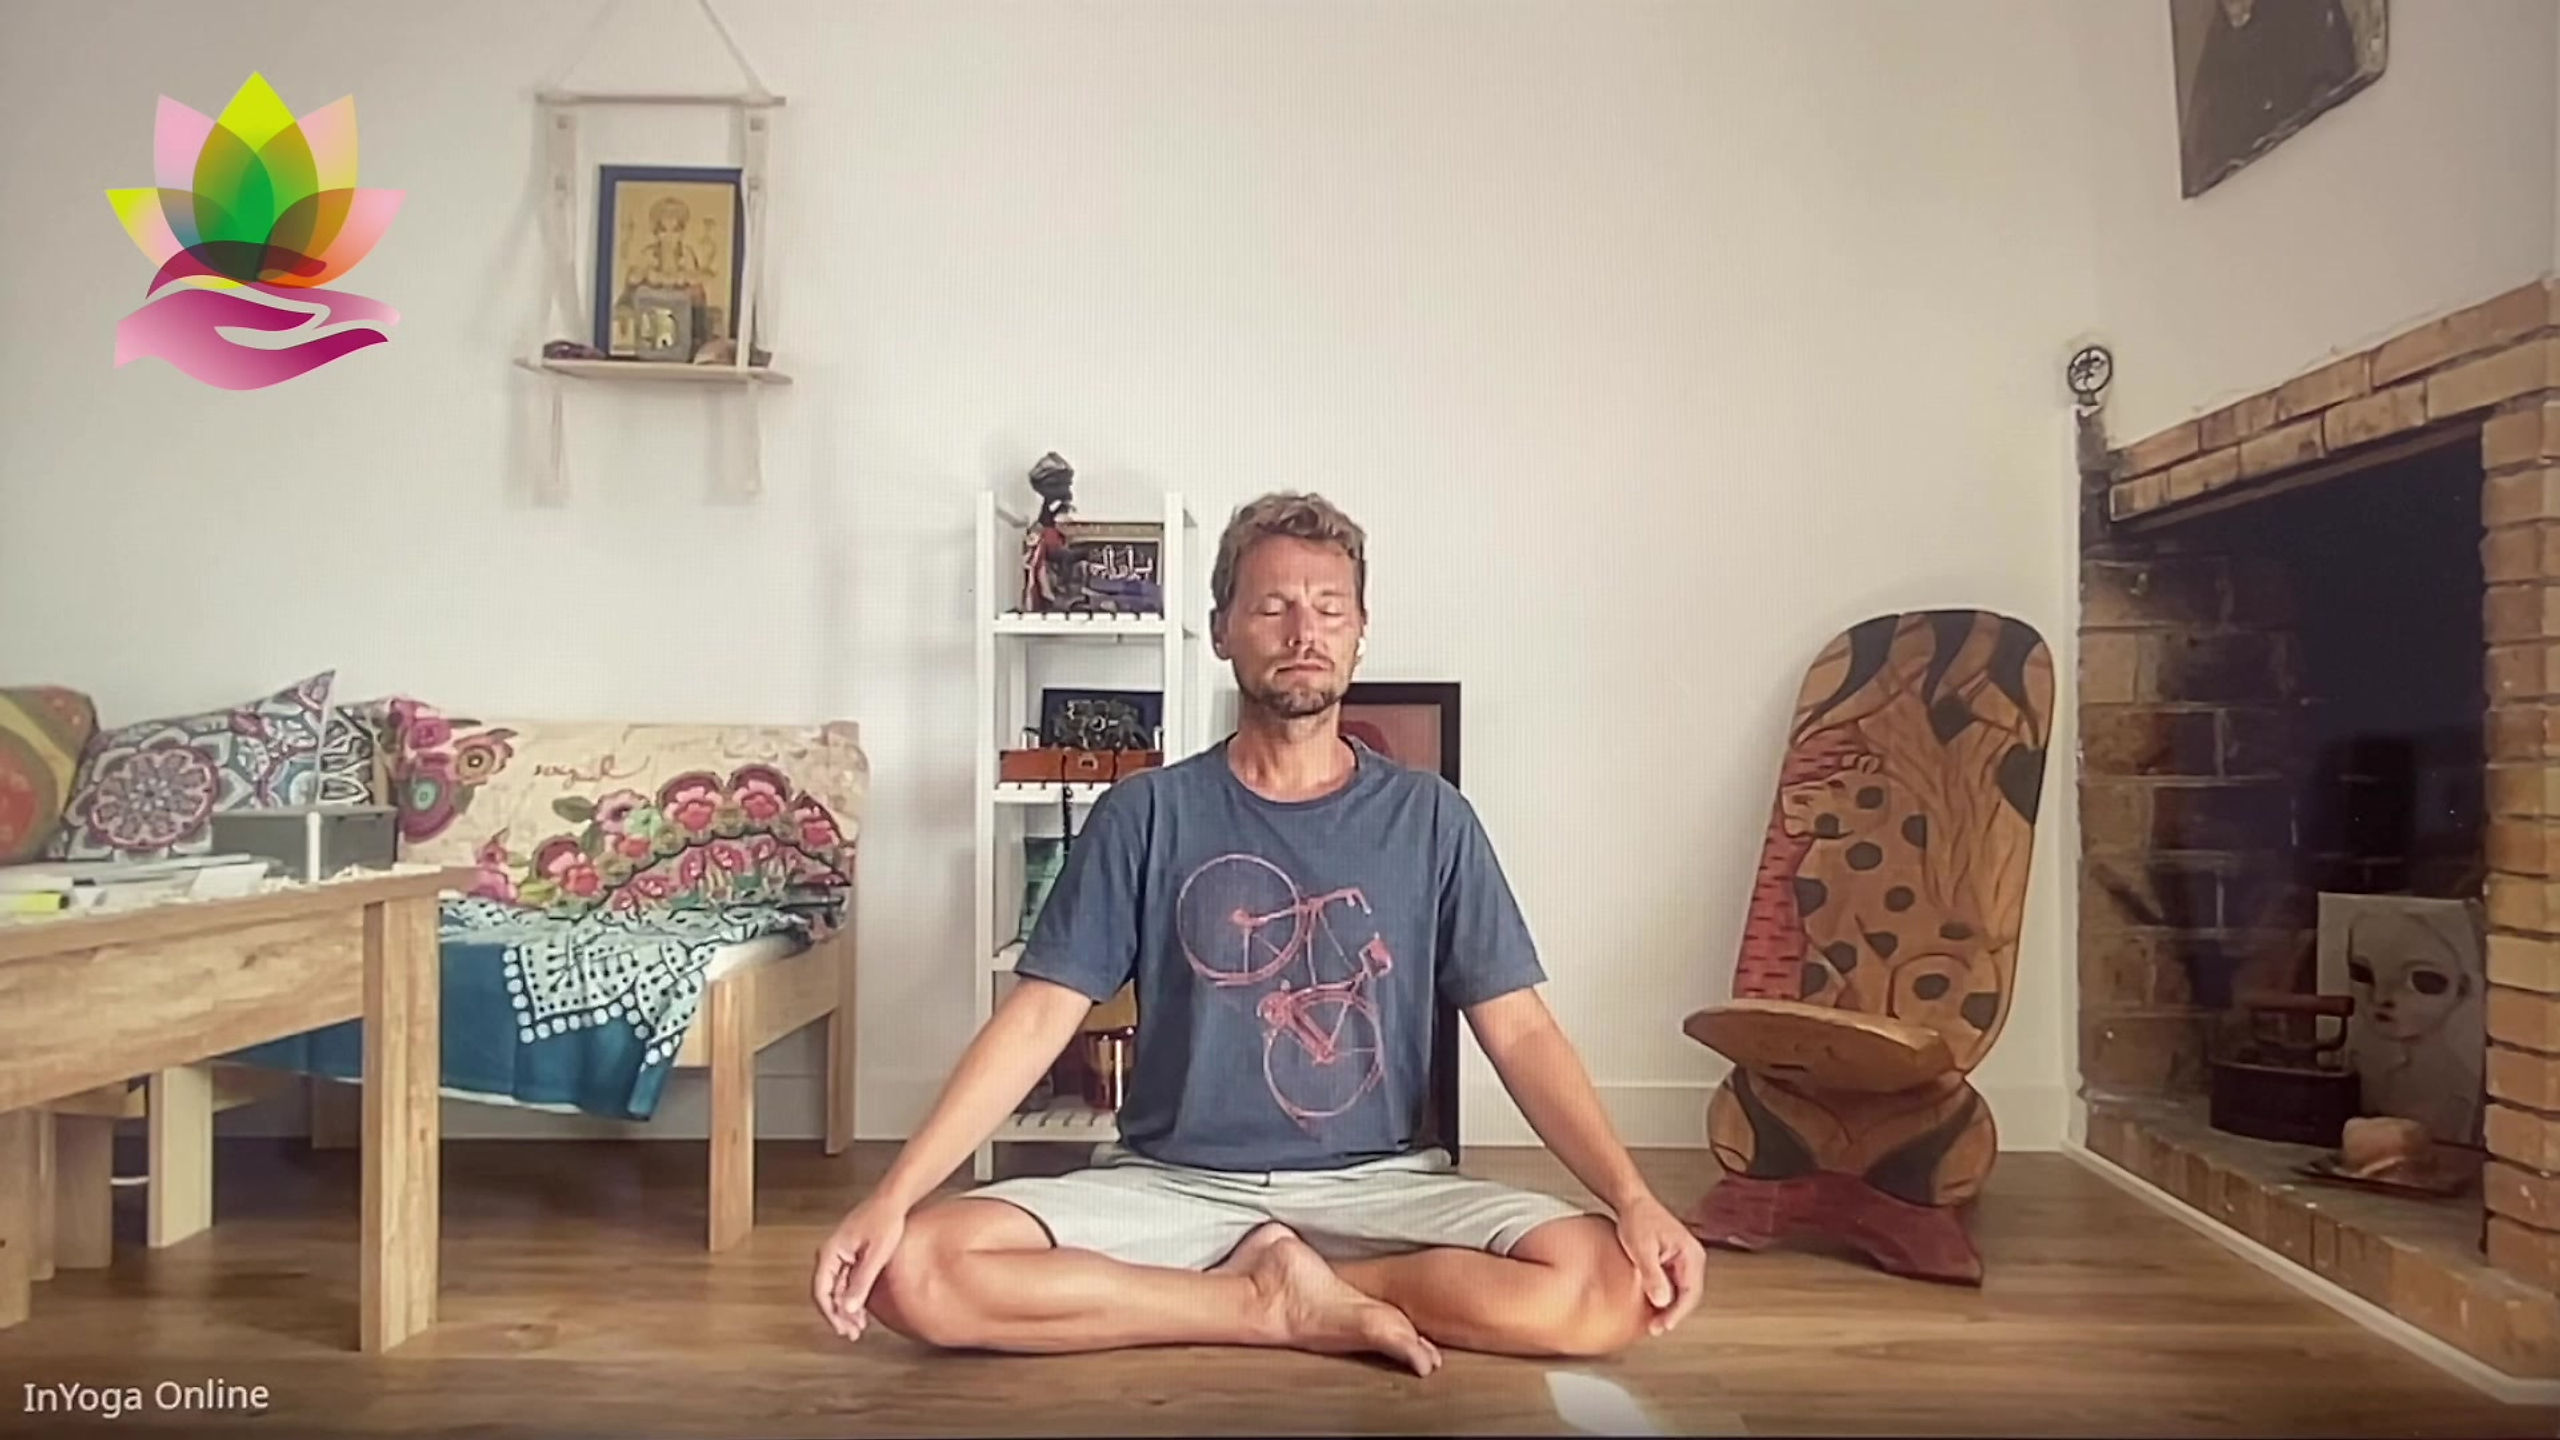 Clases de Yoga Online en directo para la comunidad sorda!